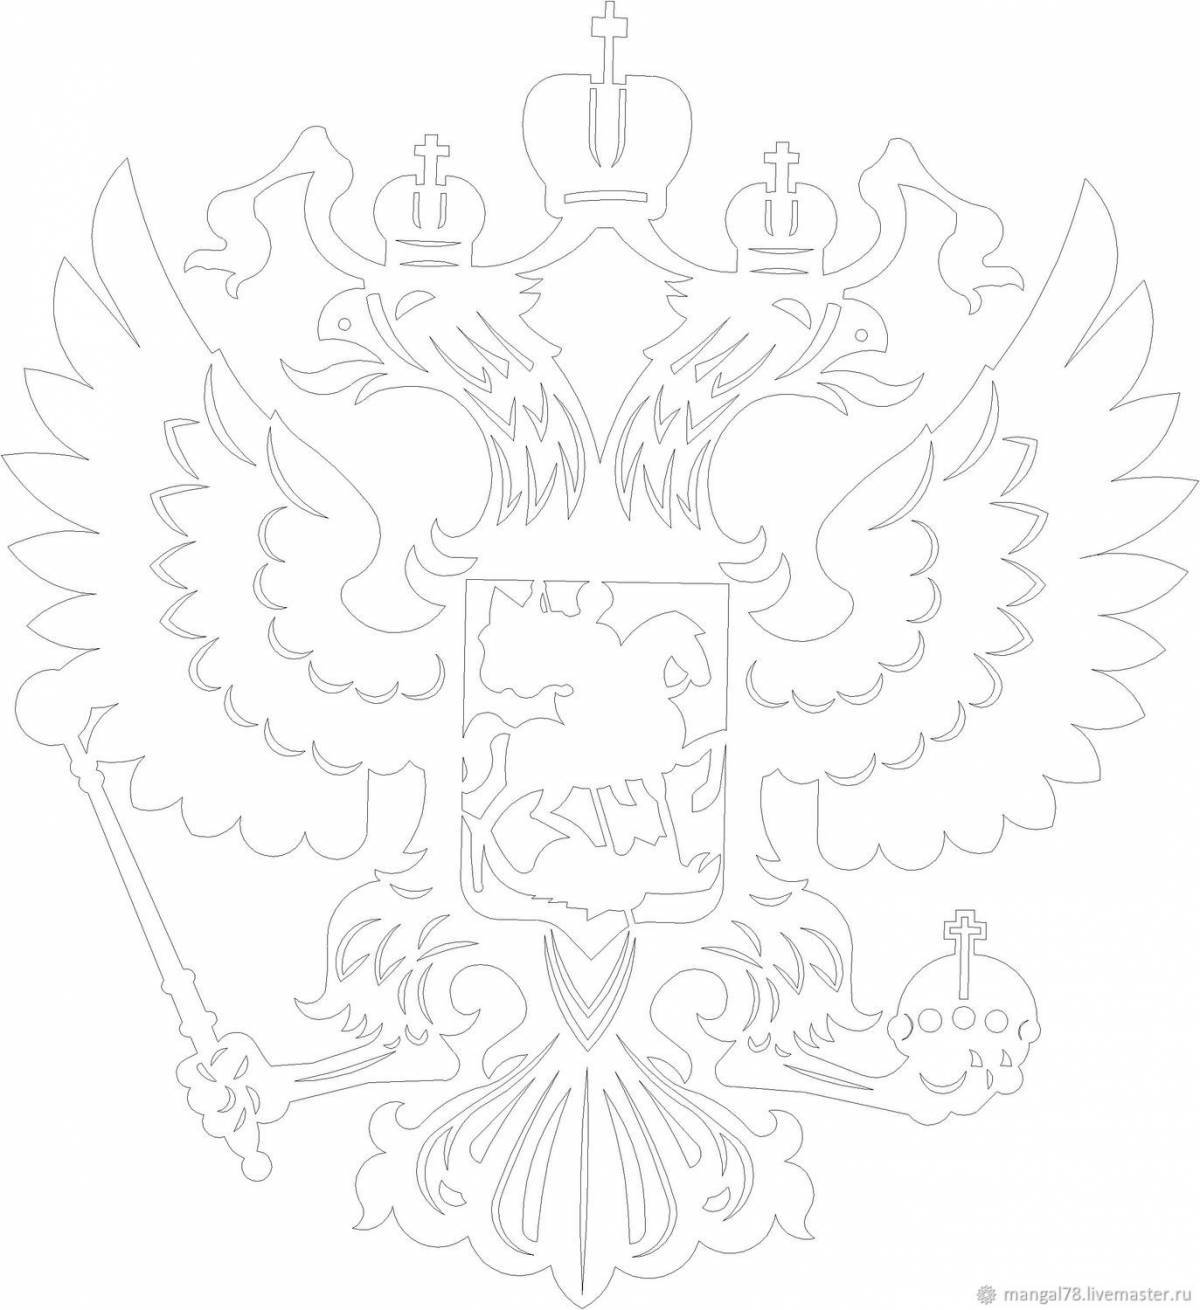 Герб России рисунок для детей 1